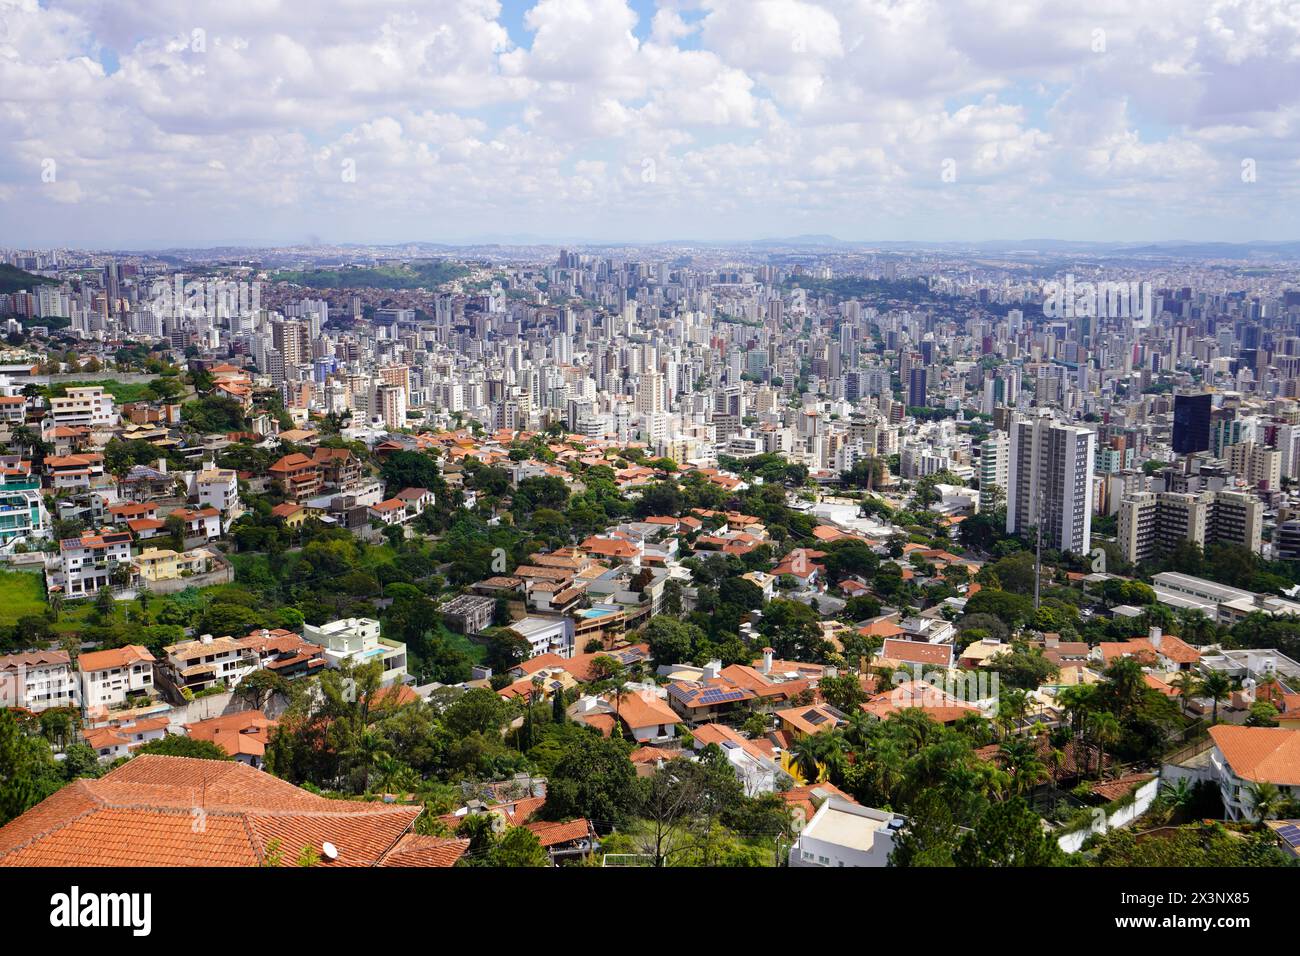 Metropolitan area of Belo Horizonte in Minas Gerais state, Brazil Stock Photo